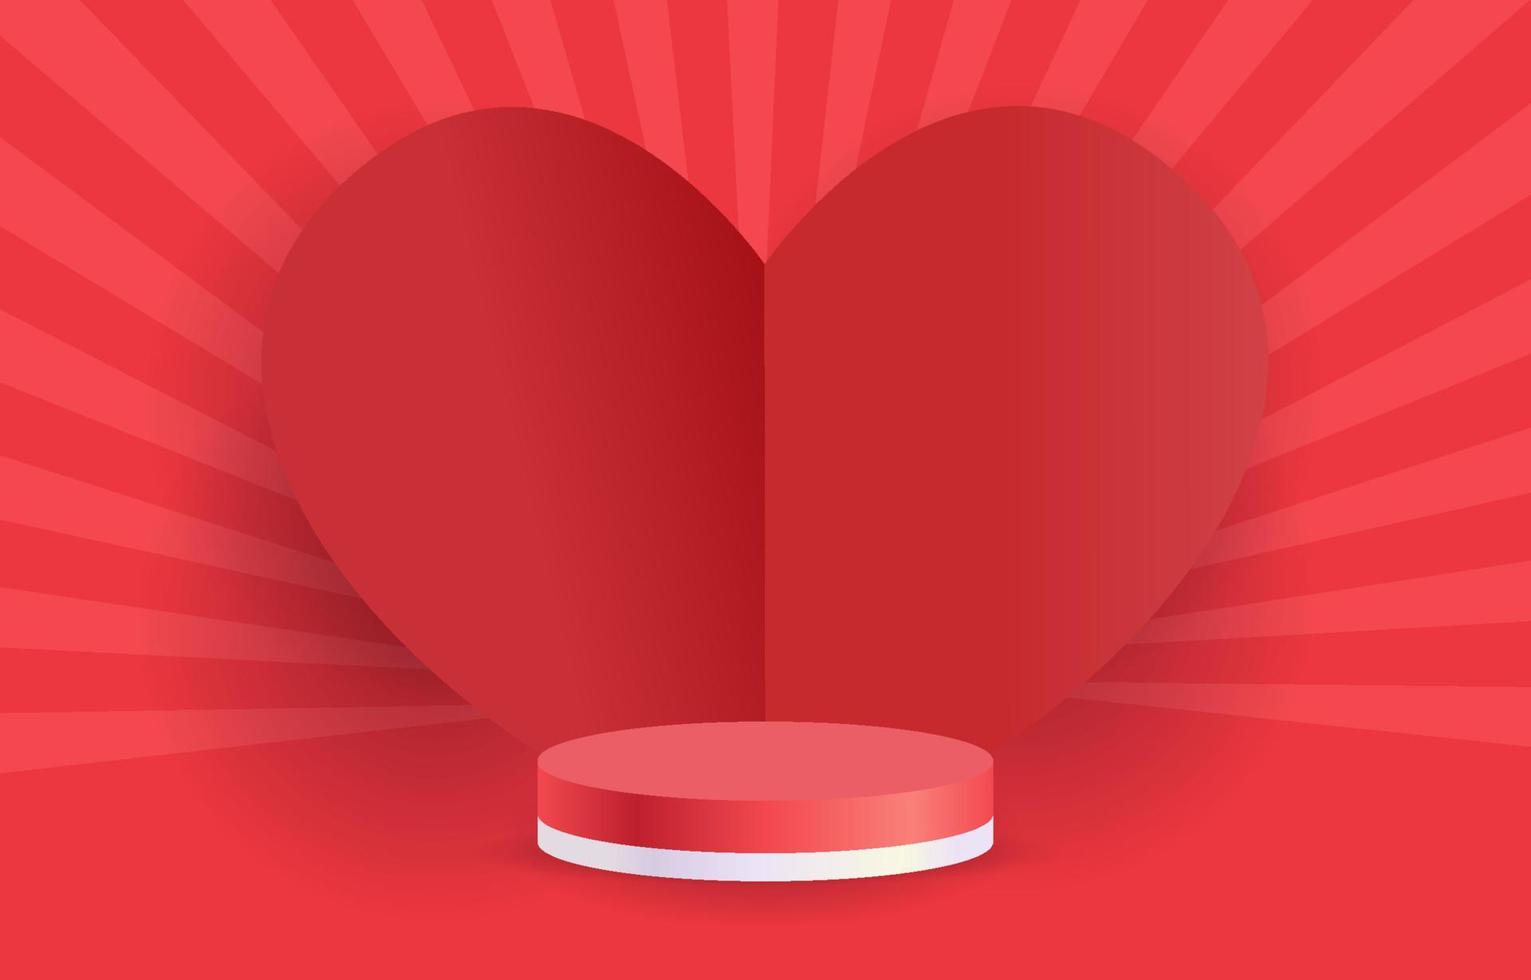 rode podium illustratie vector concept liefde of Valentijn. versier met hartjes. ontwerp voor achtergrond, web, app, banner, sjabloon, promotie. leeg cilinderpodium voor product.